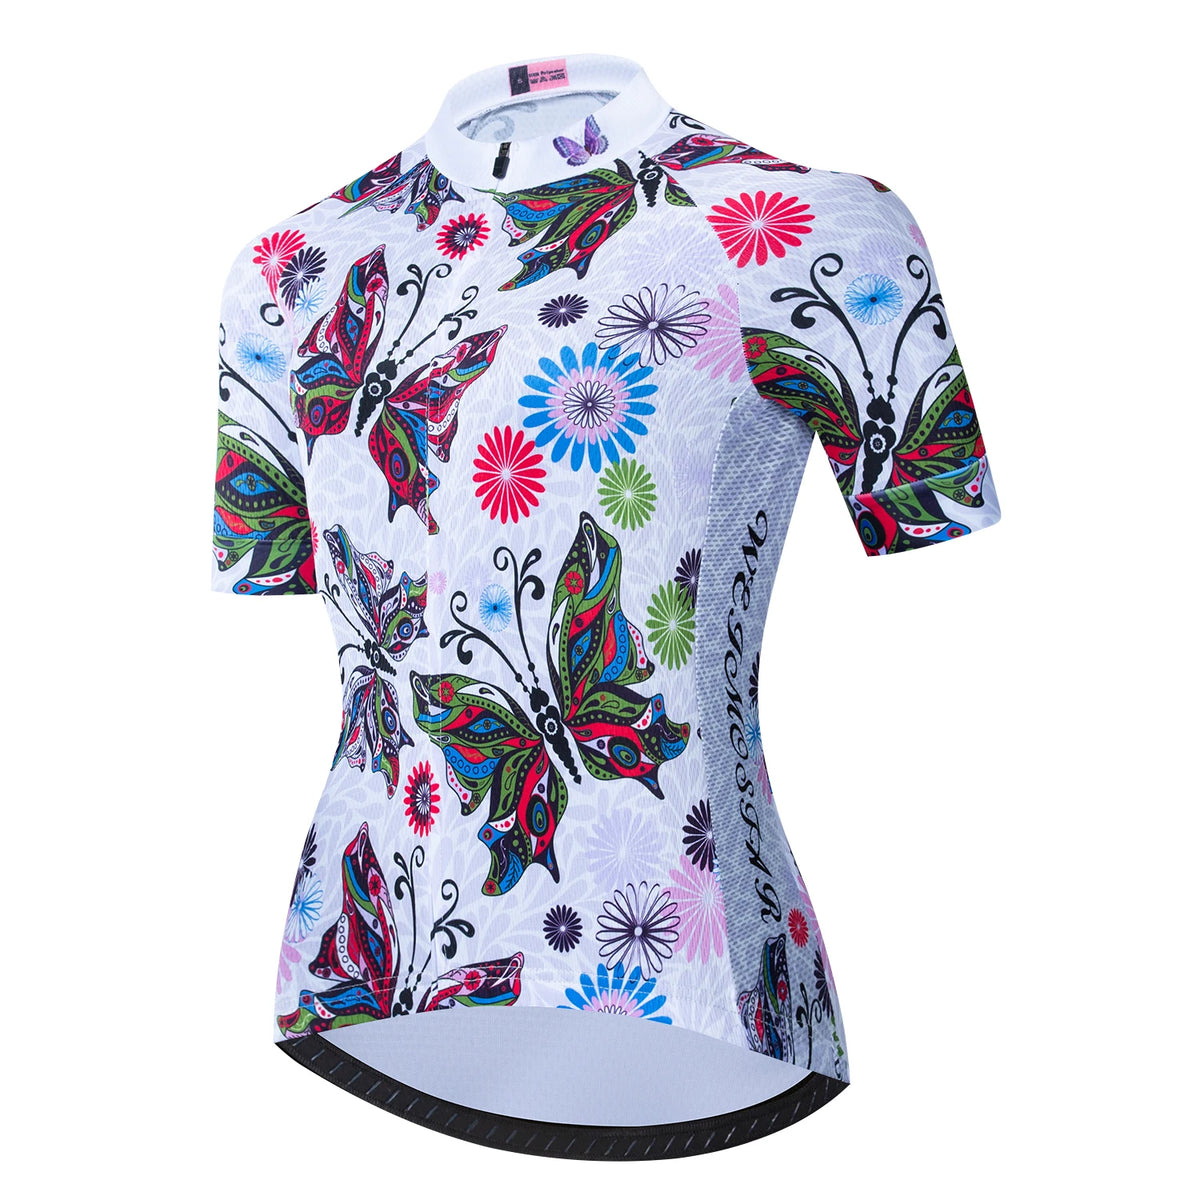 Camisa Para Ciclismo Feminina, Camisas Ciclismo Feminina, Camisetas Ciclismo Feminina, Camisa Ciclismo Feminina, Camisa Ciclismo feminino, Camiseta Ciclismo Feminina, Blusa Ciclismo Feminina